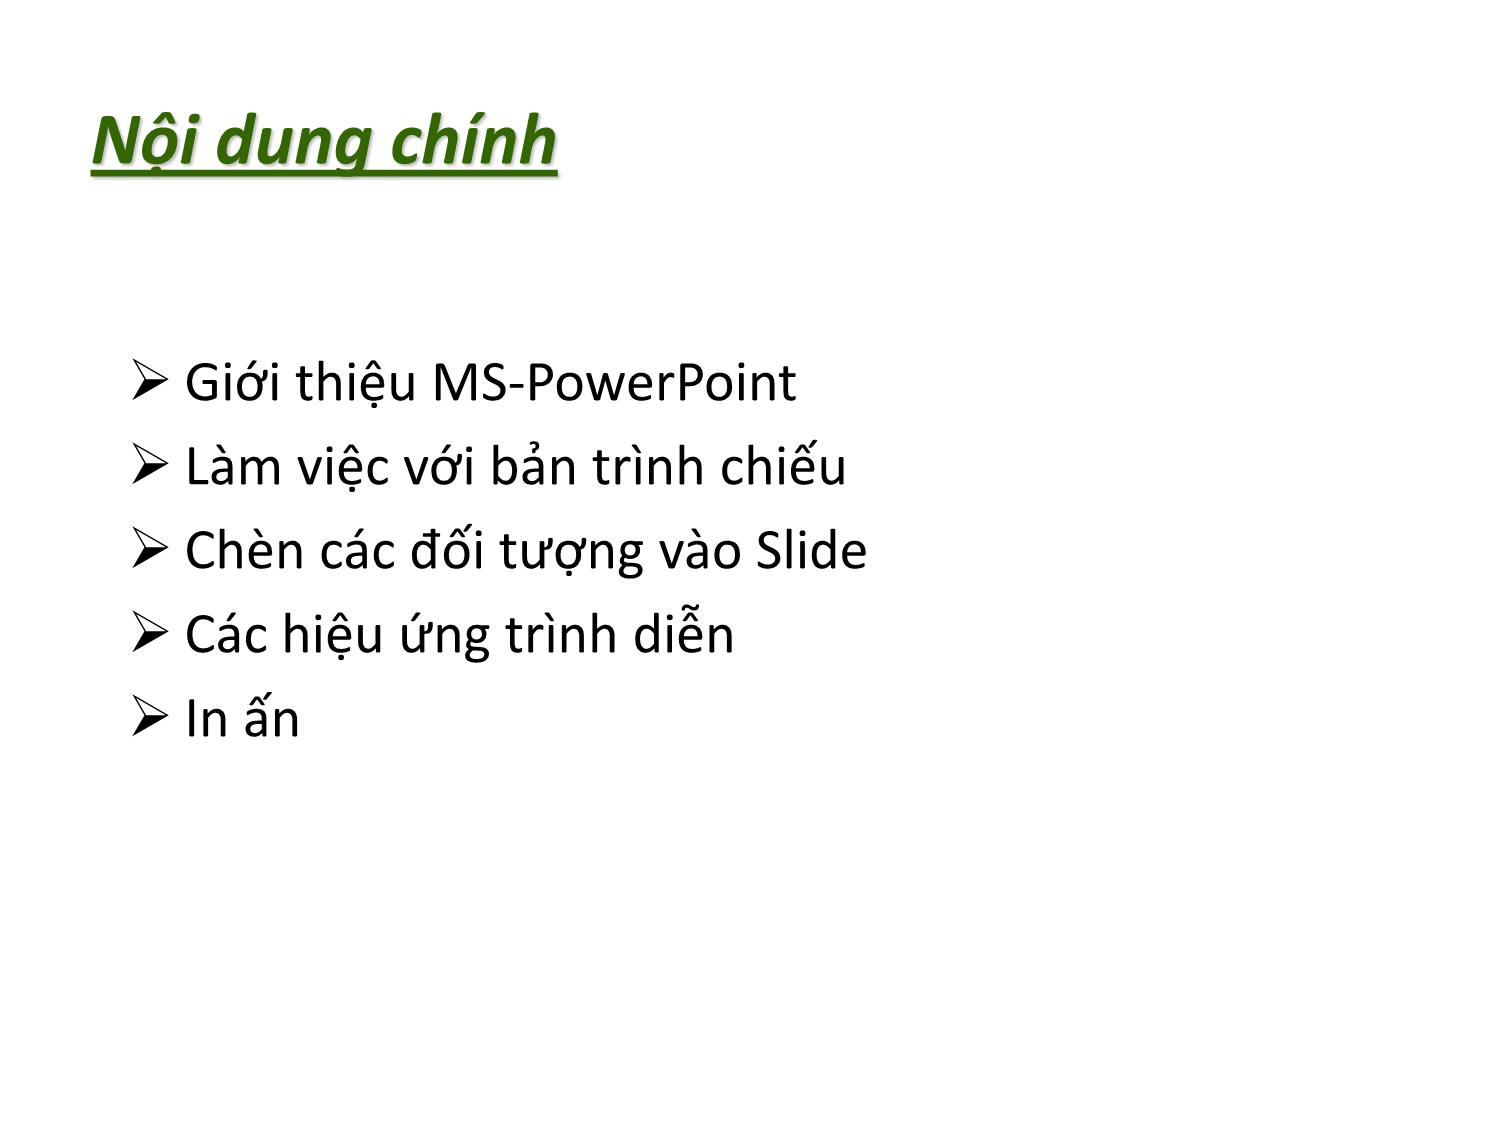 Bài giảng Tin học nhóm ngành Nông-Lâm-Ngư & Môi trường - Chương 3: Thiết kế bài trình chiếu (MS PowerPoint 2010) trang 3